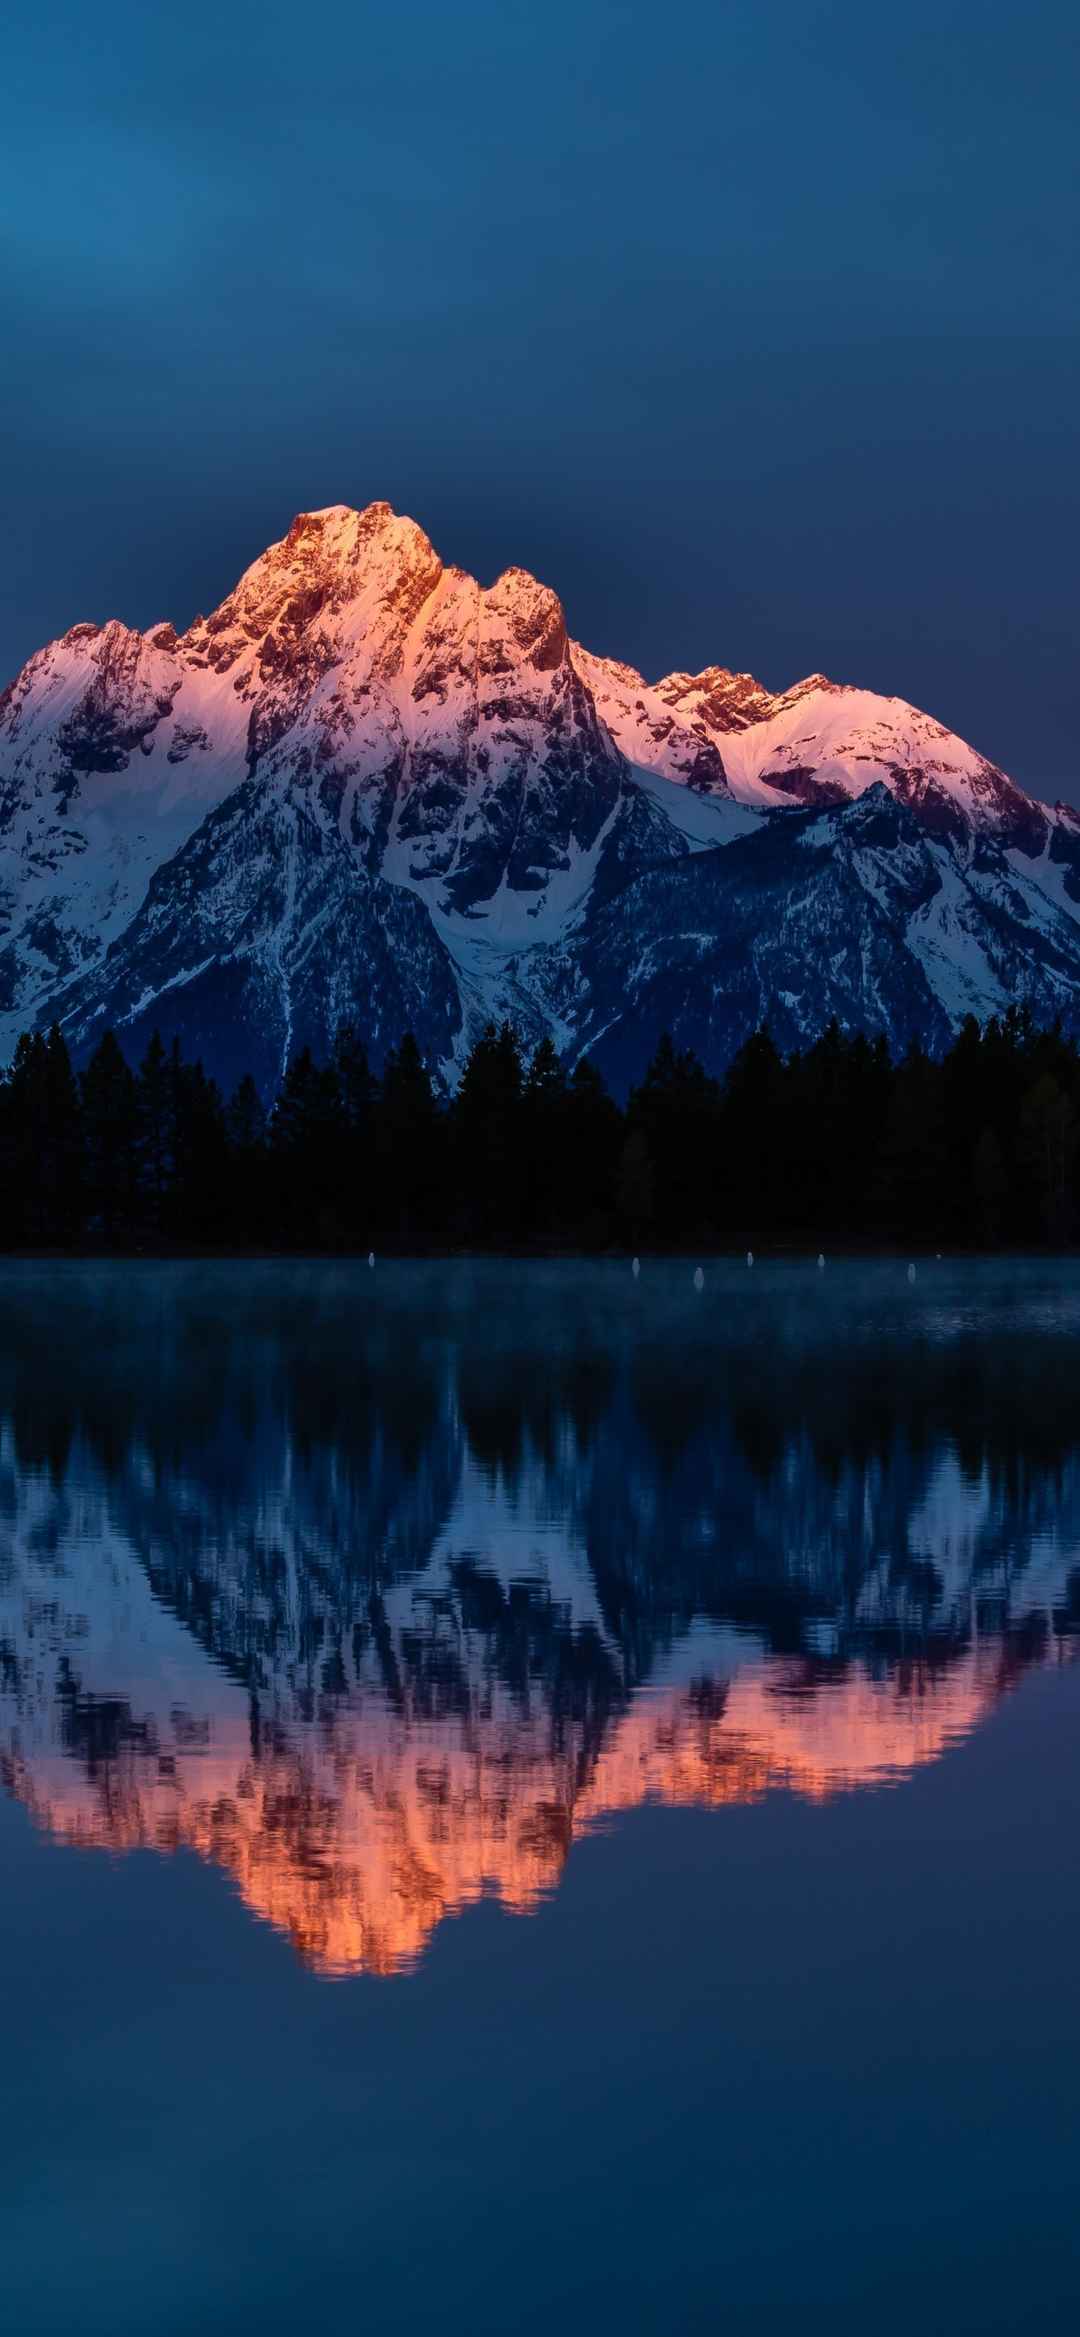 著名旅游景点的雪山倒影在湖泊的手机壁纸-